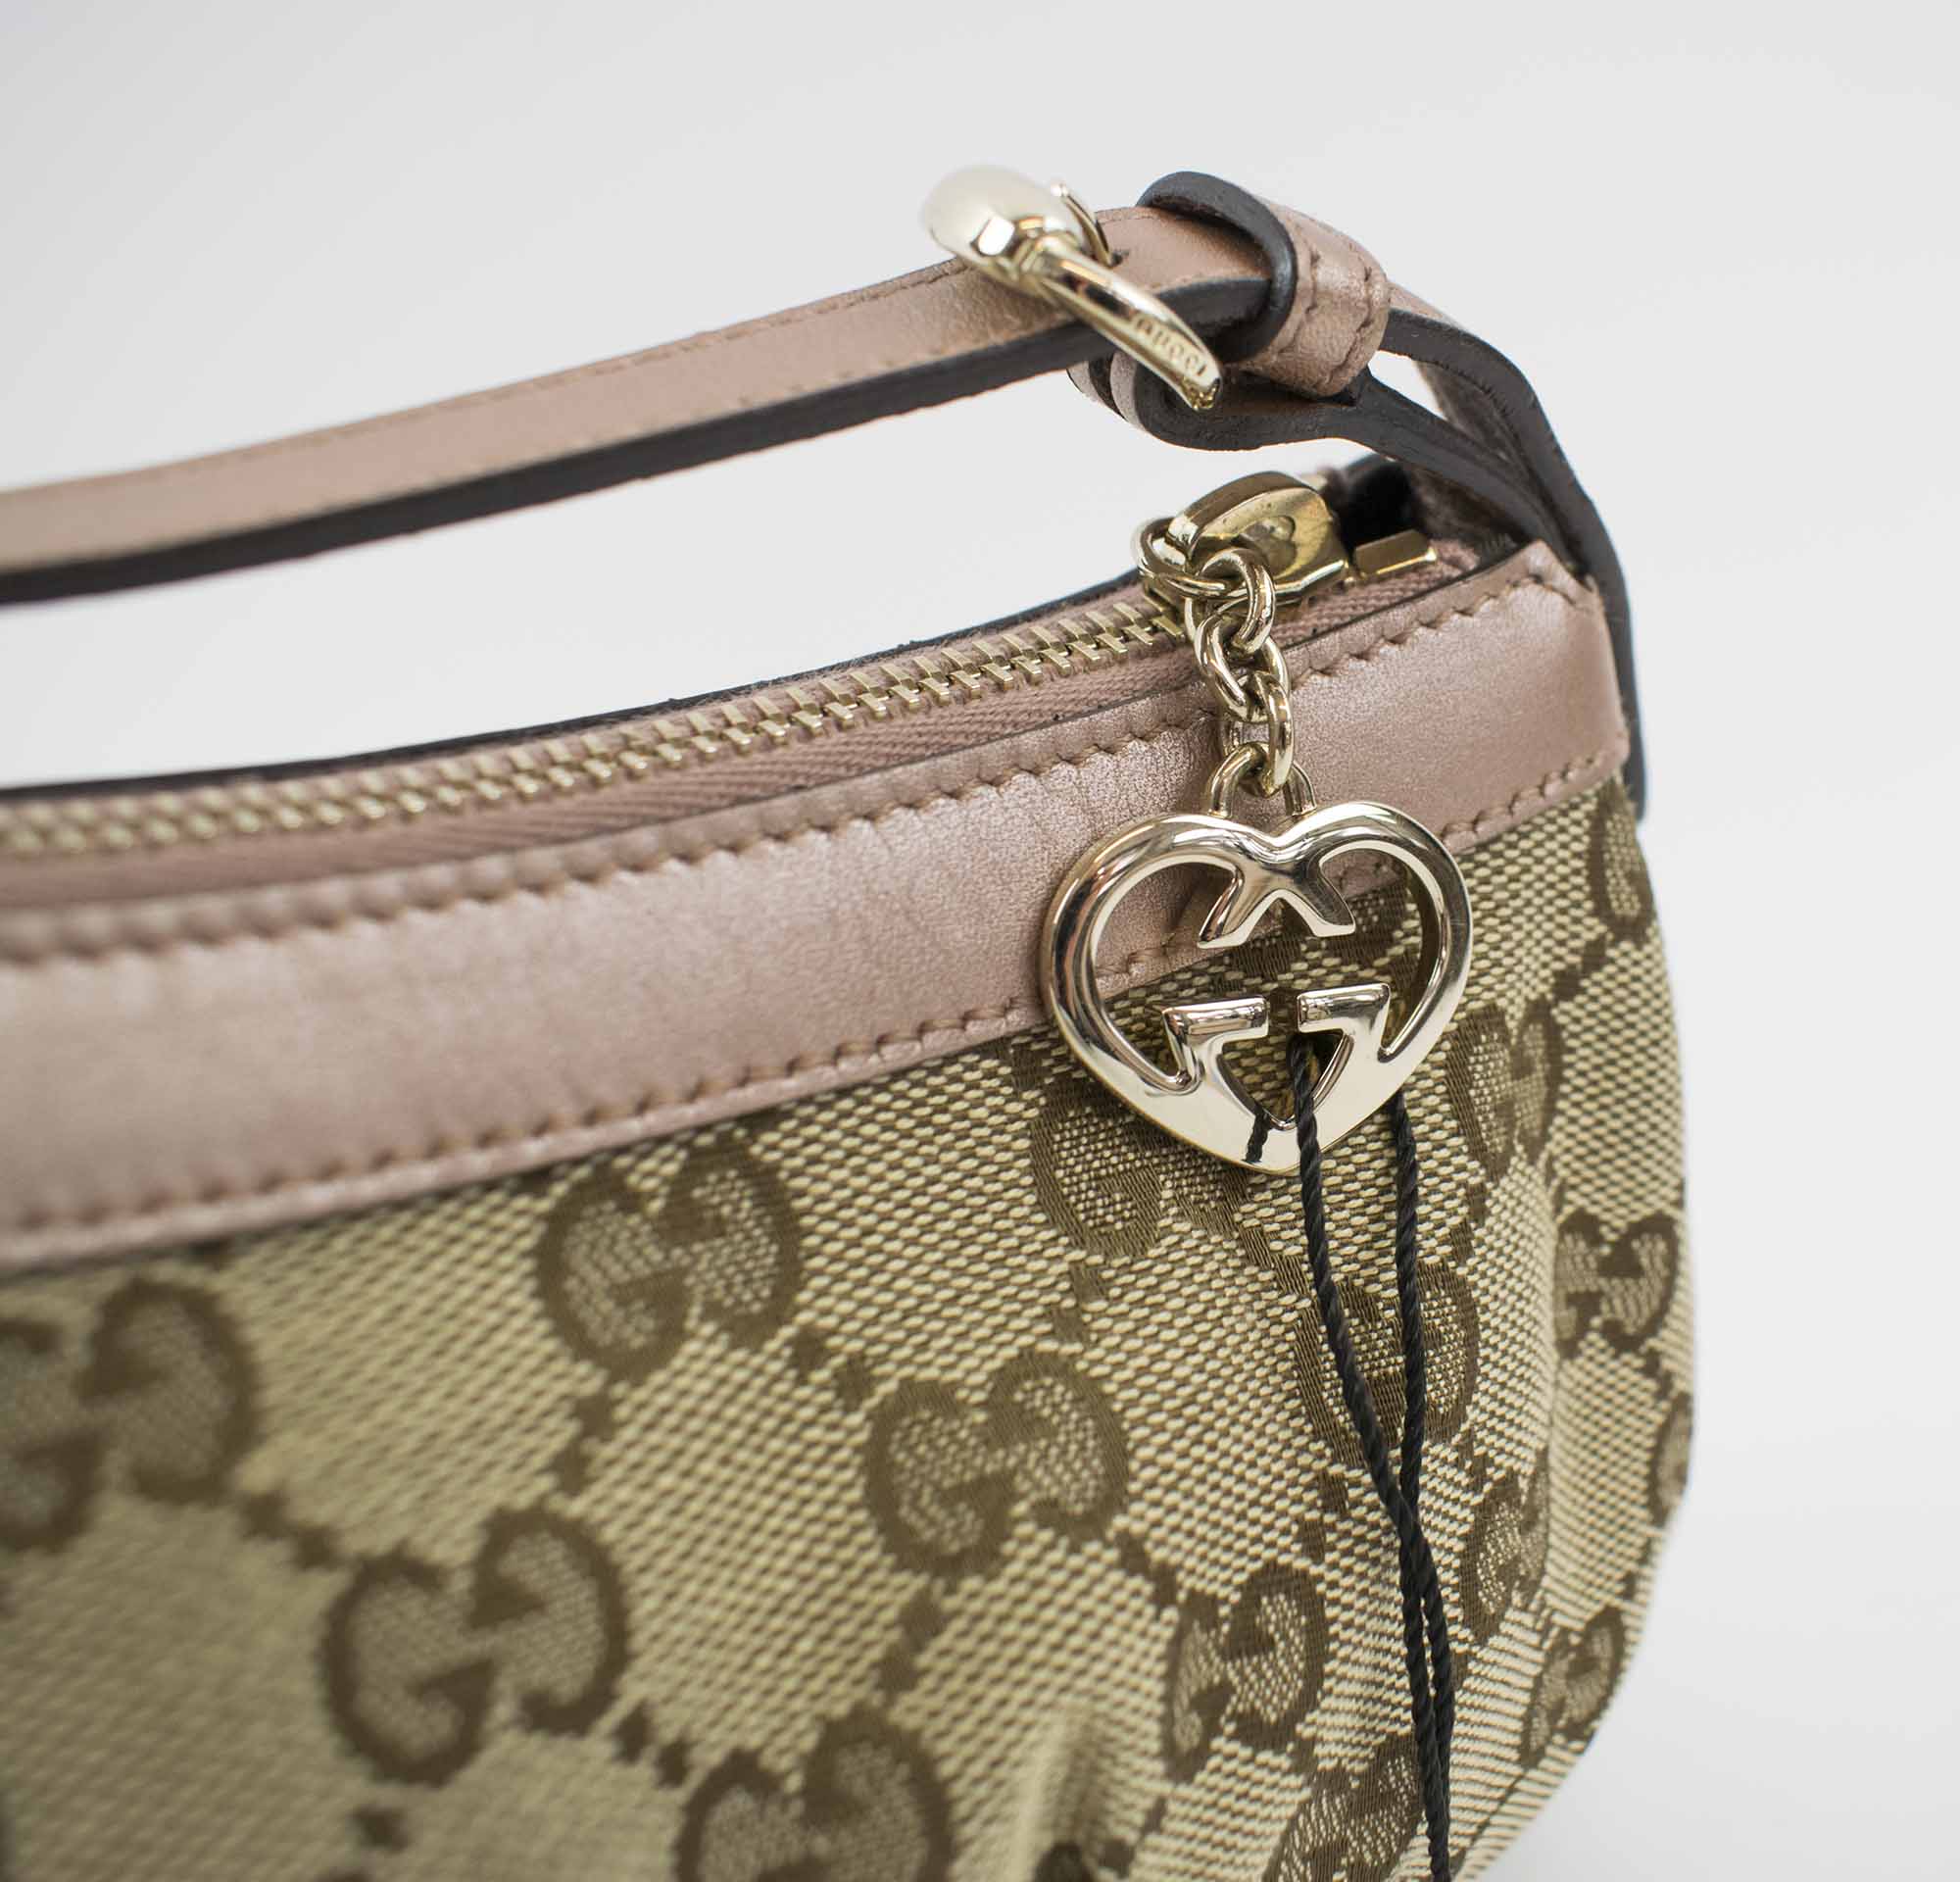 Gucci Vintage Pochette Shoulder Bag